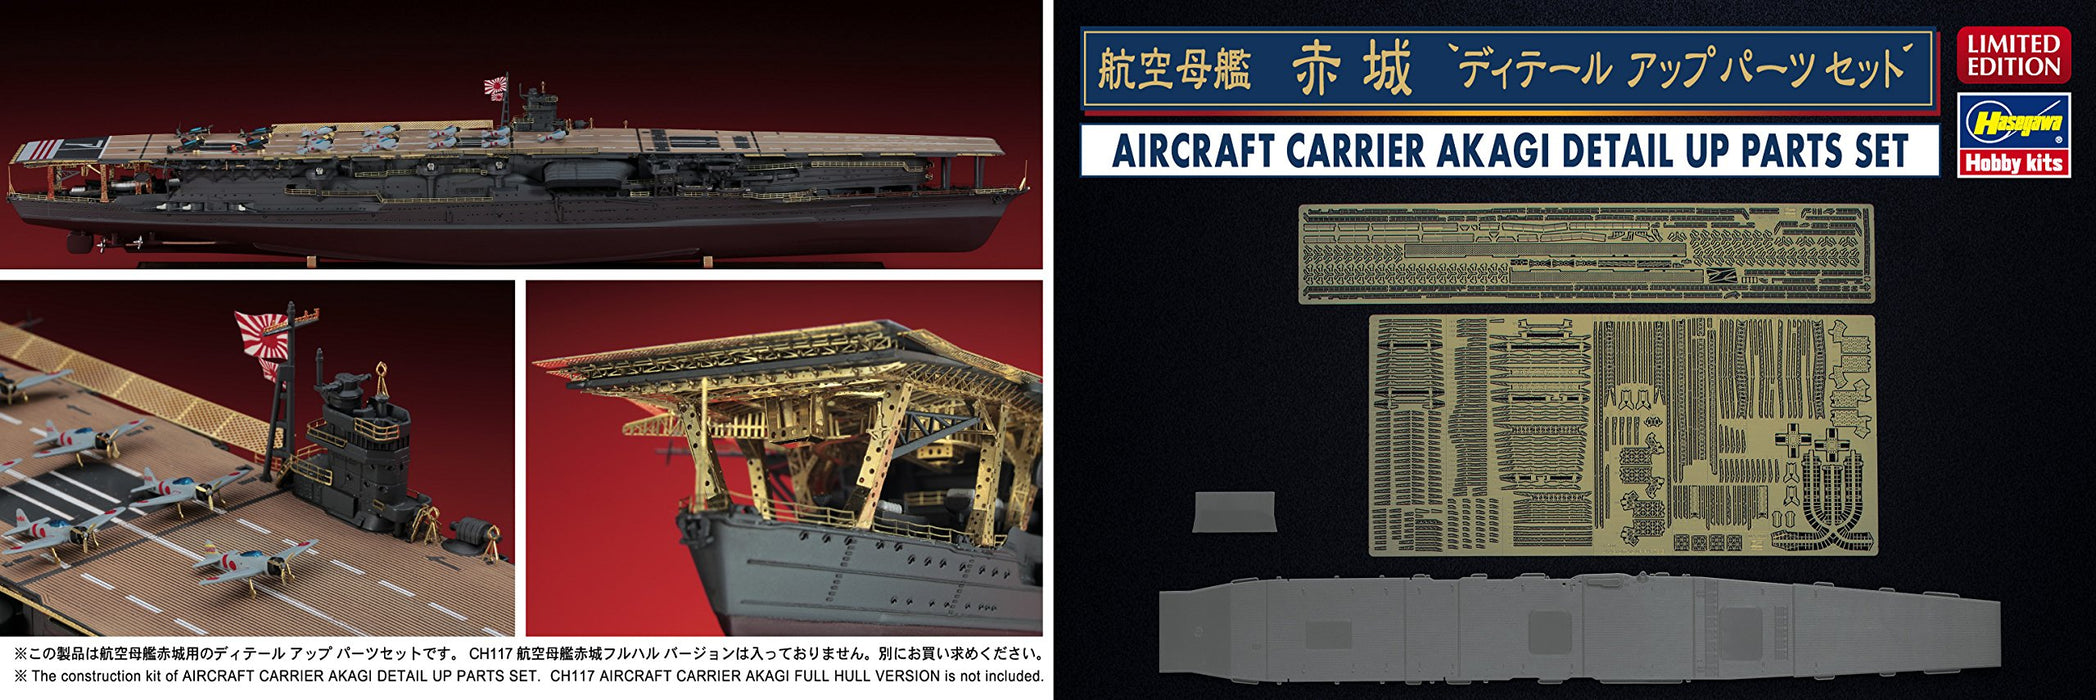 Hasegawa 30036 1/700 Japanese Navy Aircraft Carrier Akagi Detail Up Parts Set Plastic Model Parts